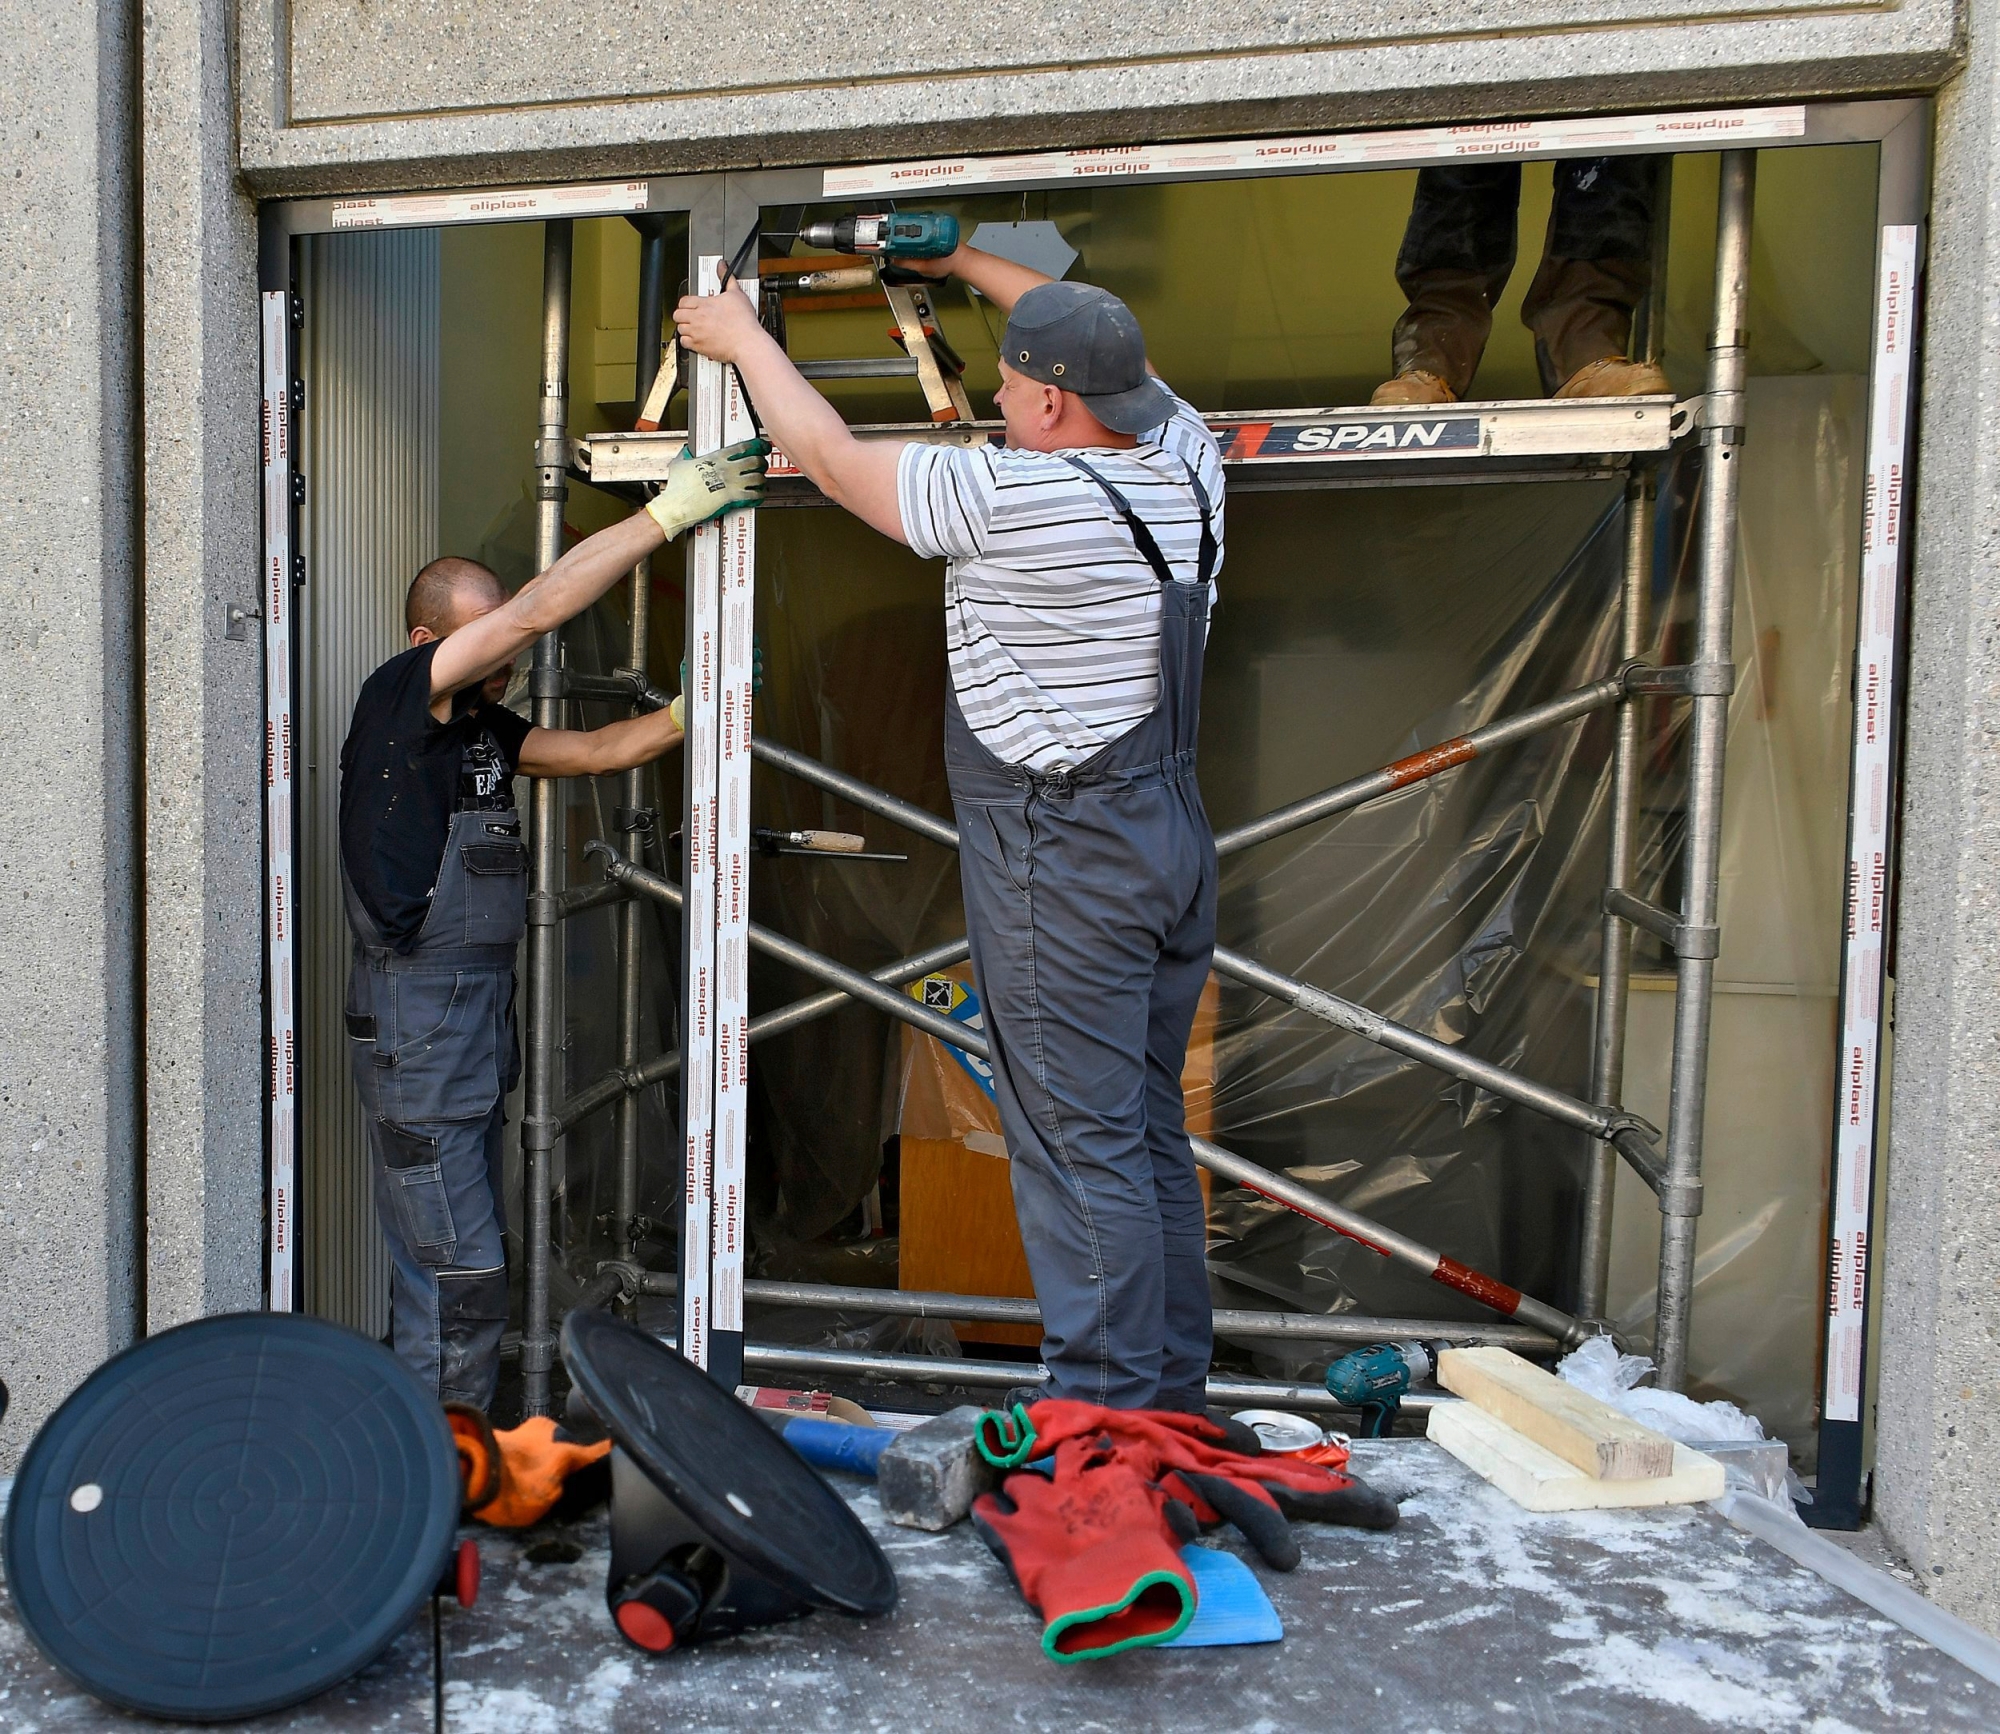 Travailleurs polonais, ici sur un chantier à Pérolles.
Photo Lib Vincent Murith, Fribourg, 12.04.17